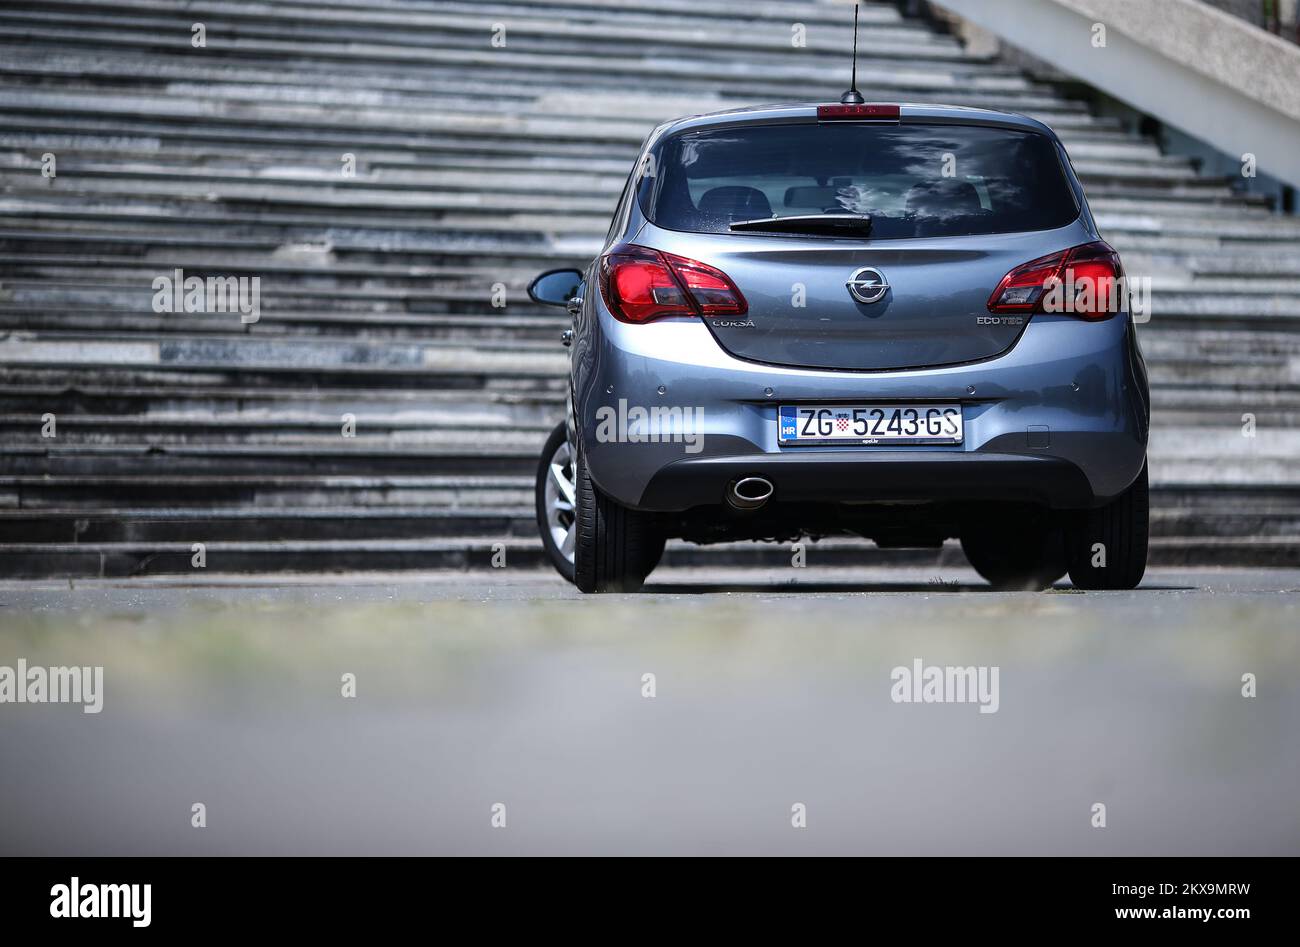 31.07.2018., Zagabria, Croazia - Opel corsa LPG. Foto: Igor soban/PIXSELL Foto Stock